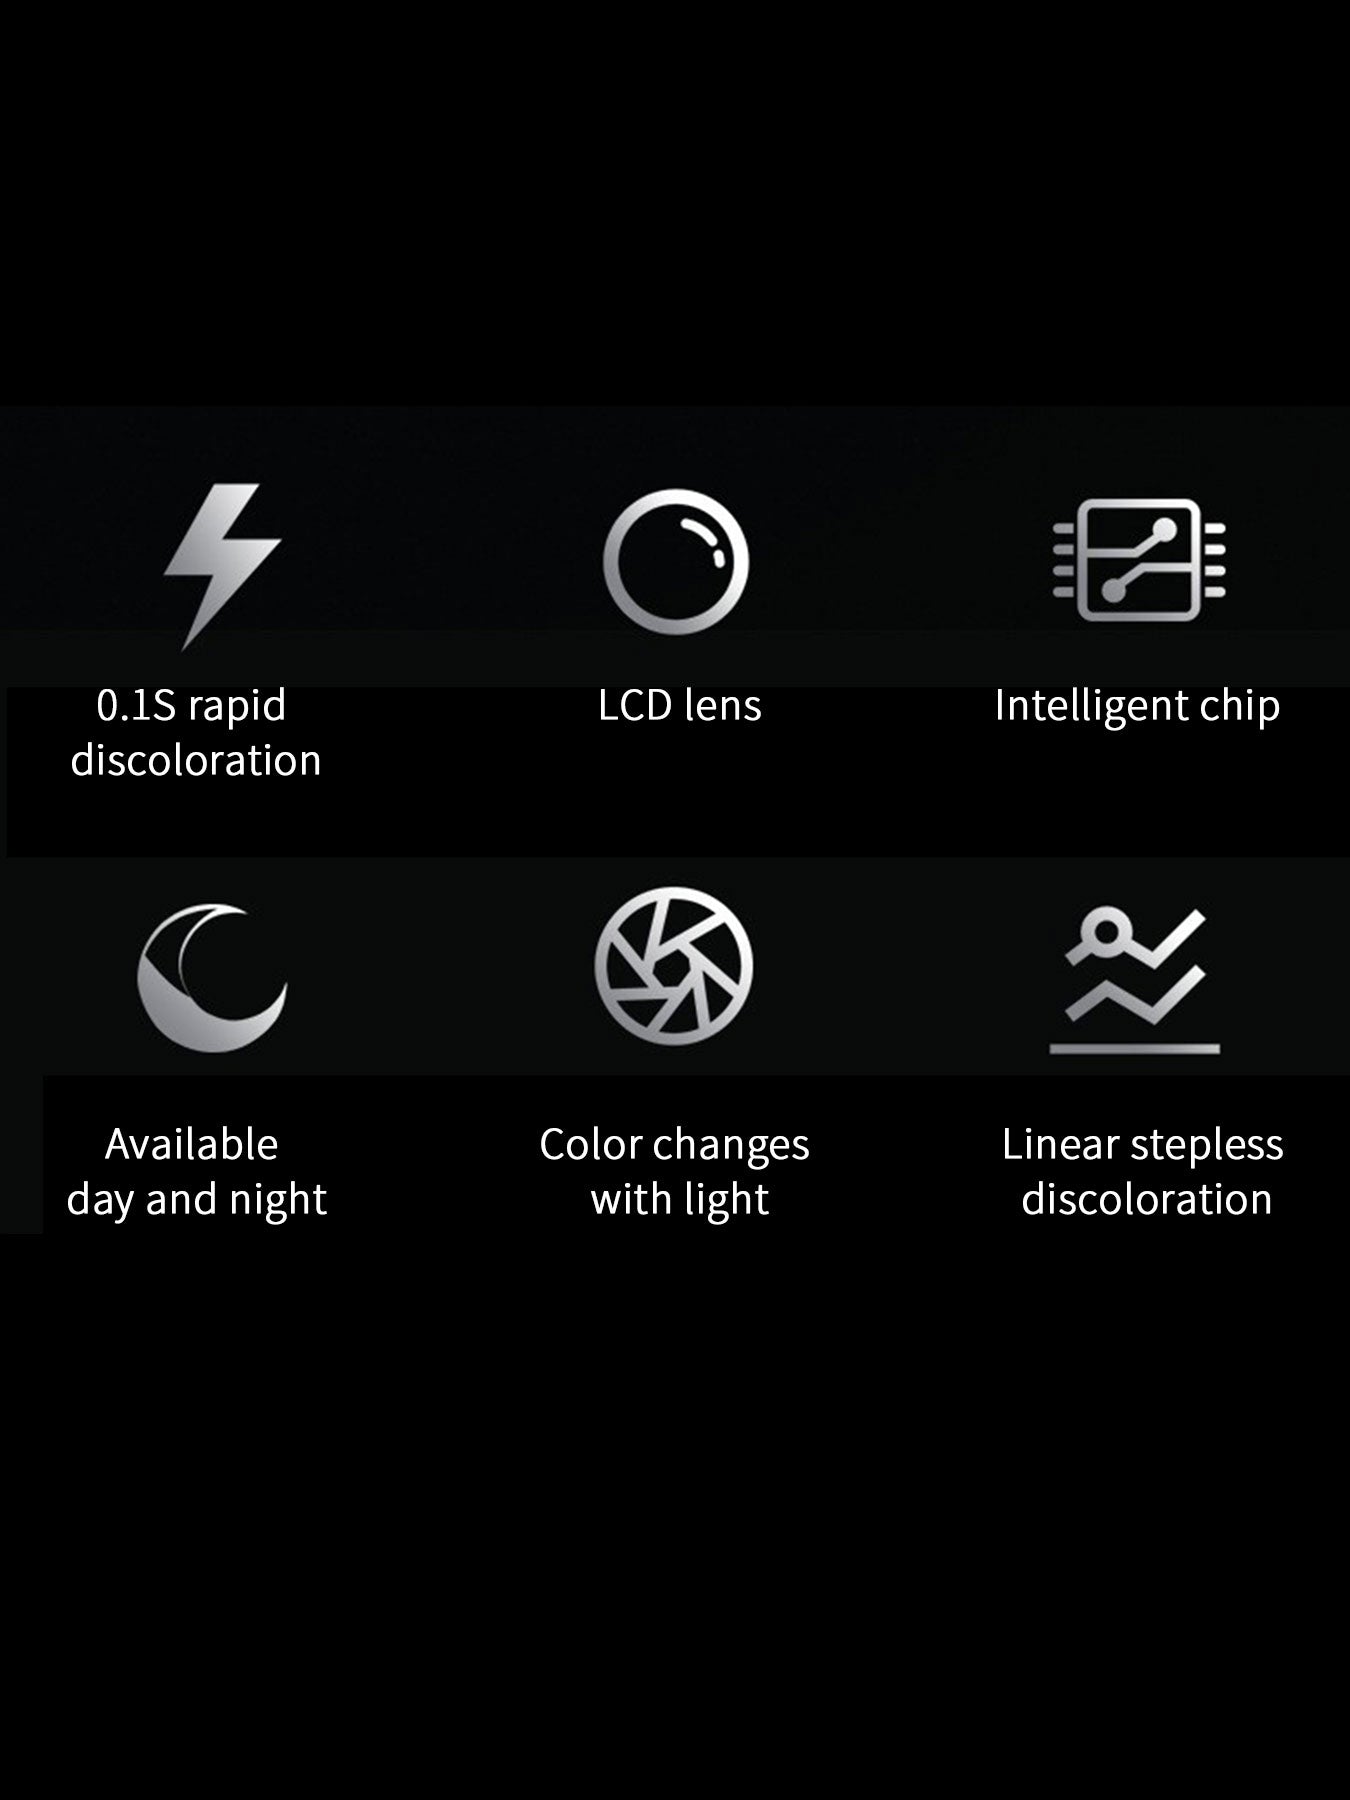 Tecnología de chip inteligente LED gafas anti - deslumbramiento y decoloración, anti - Rayos ultravioleta, anti - deslumbramiento, conducción al aire libre, conducción segura